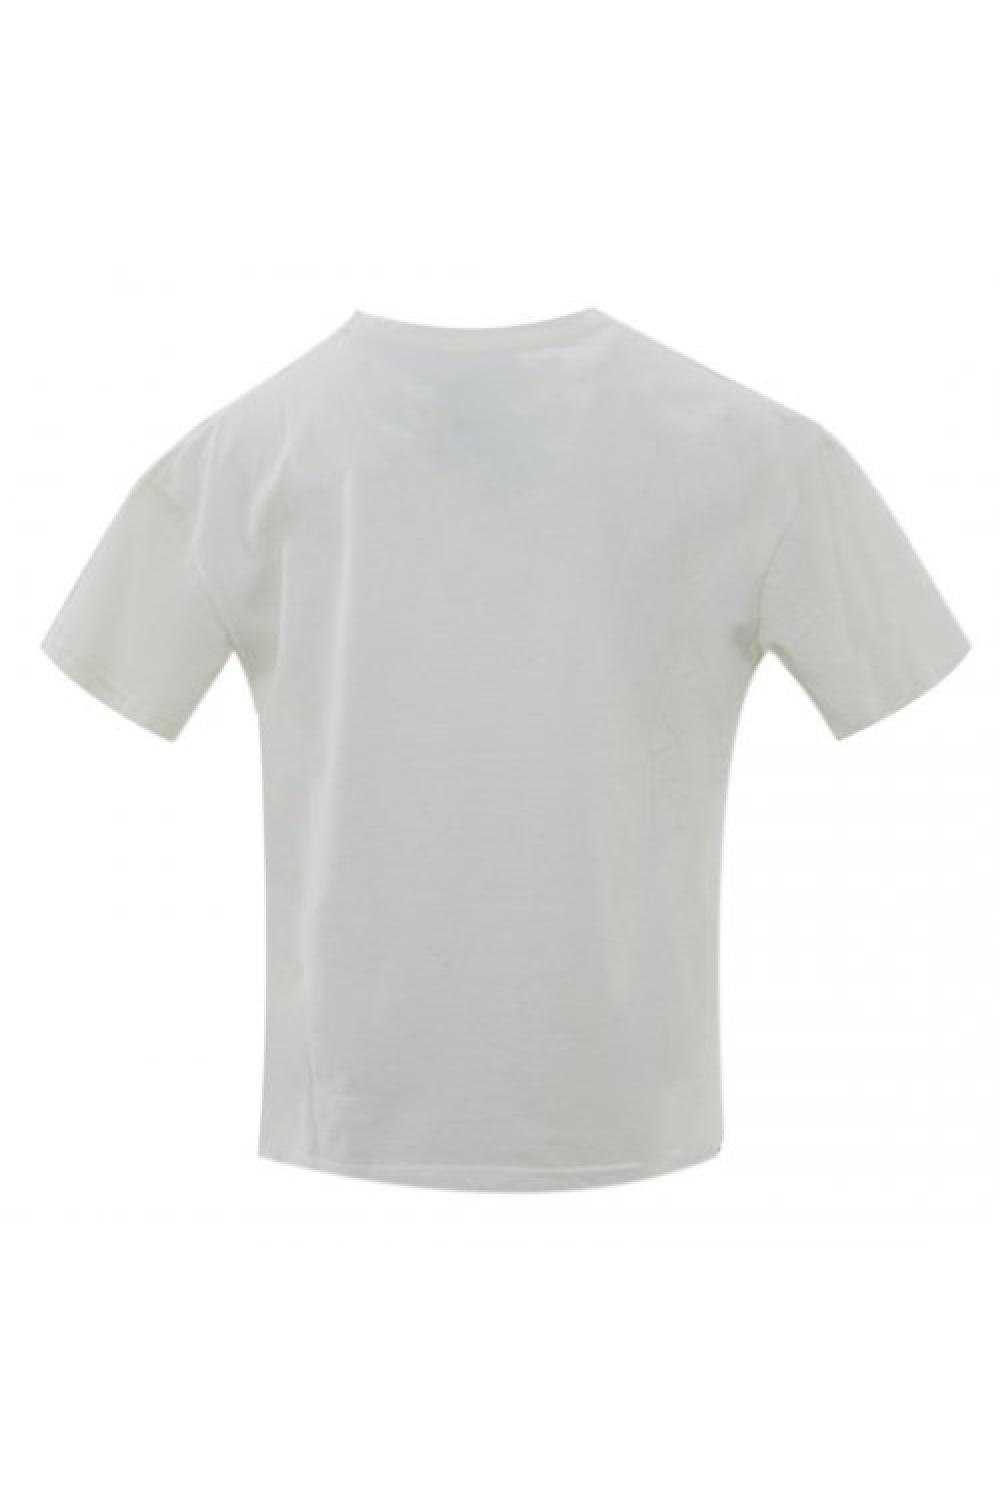 STAFF T-shirt Tessa Γυναικείο - Λευκό (63-013.047-N0010)